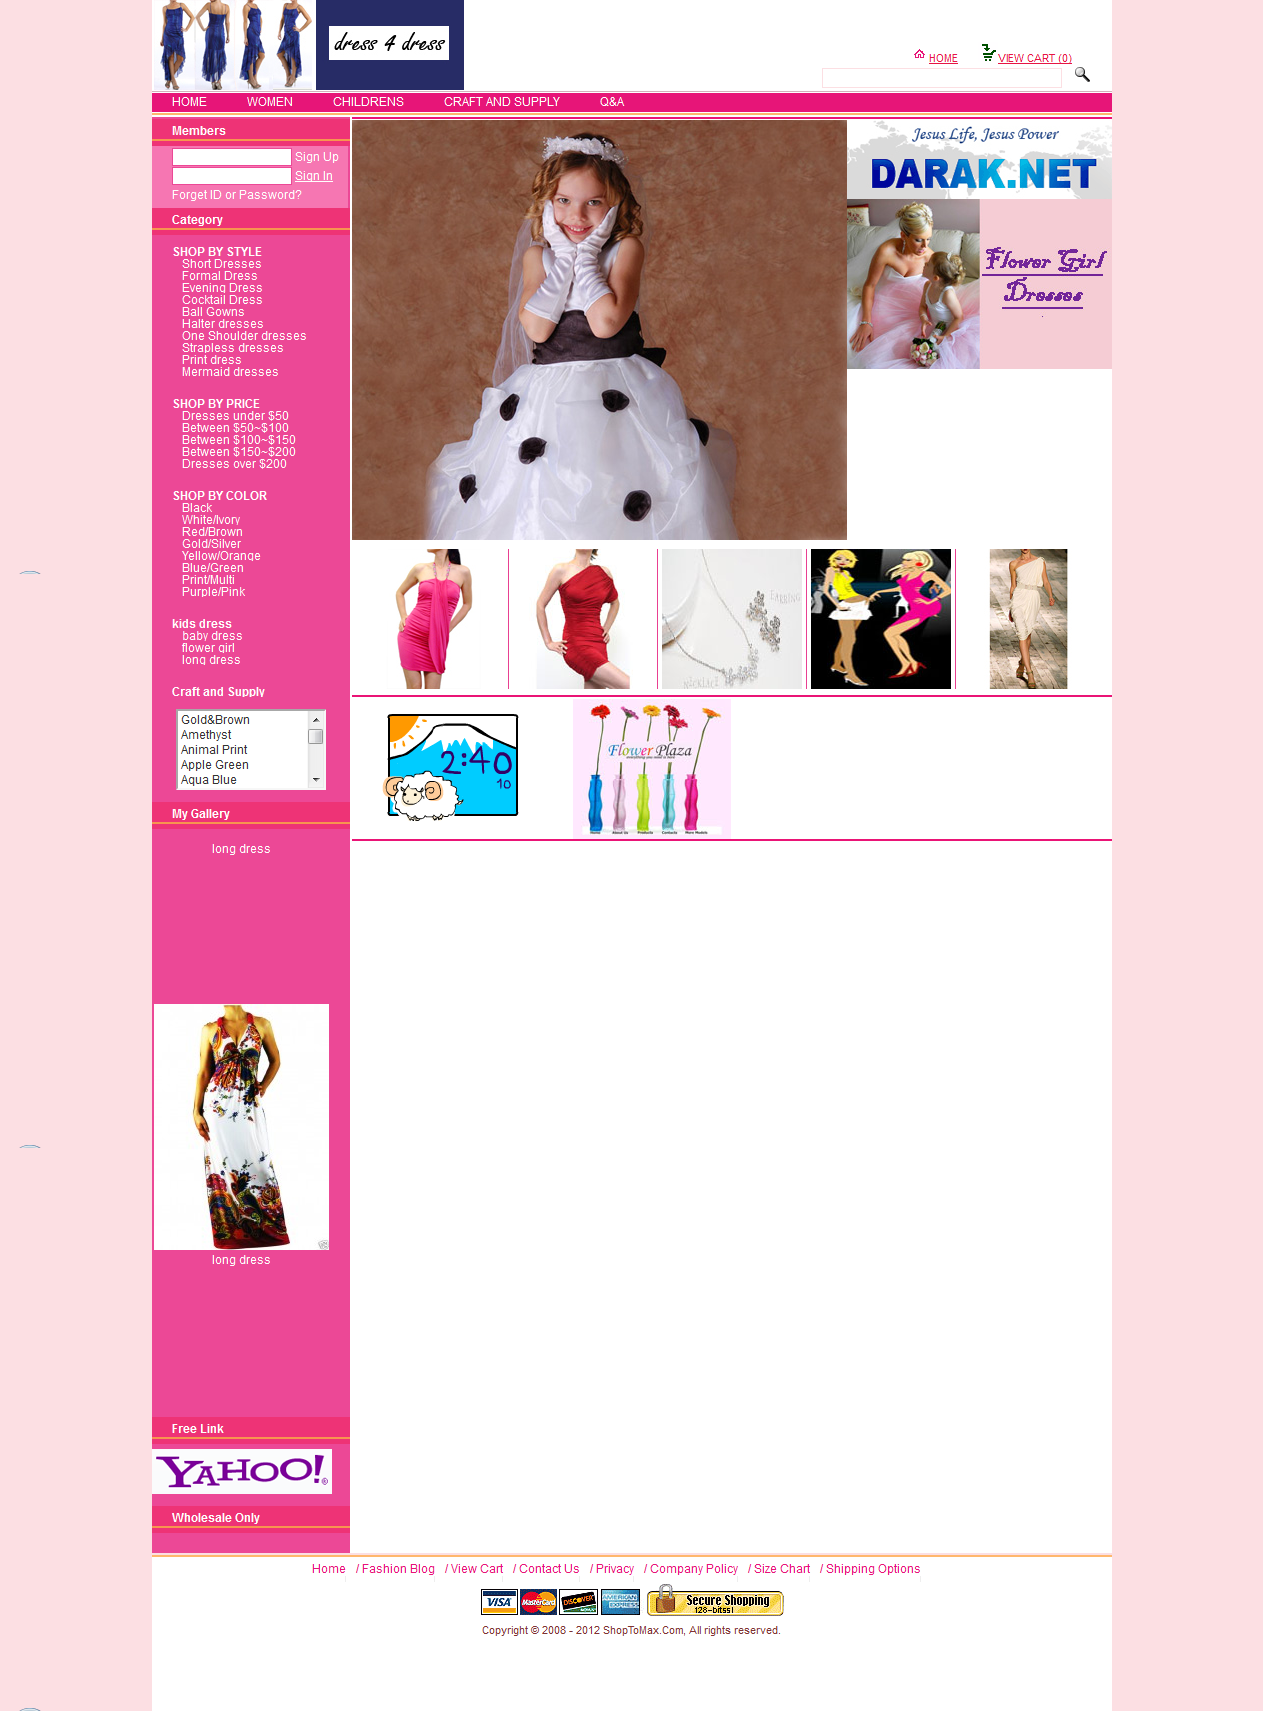 FireShot Screen Capture #135 - 'dress4dress' - dress4dress_bkihost6_com_web.png